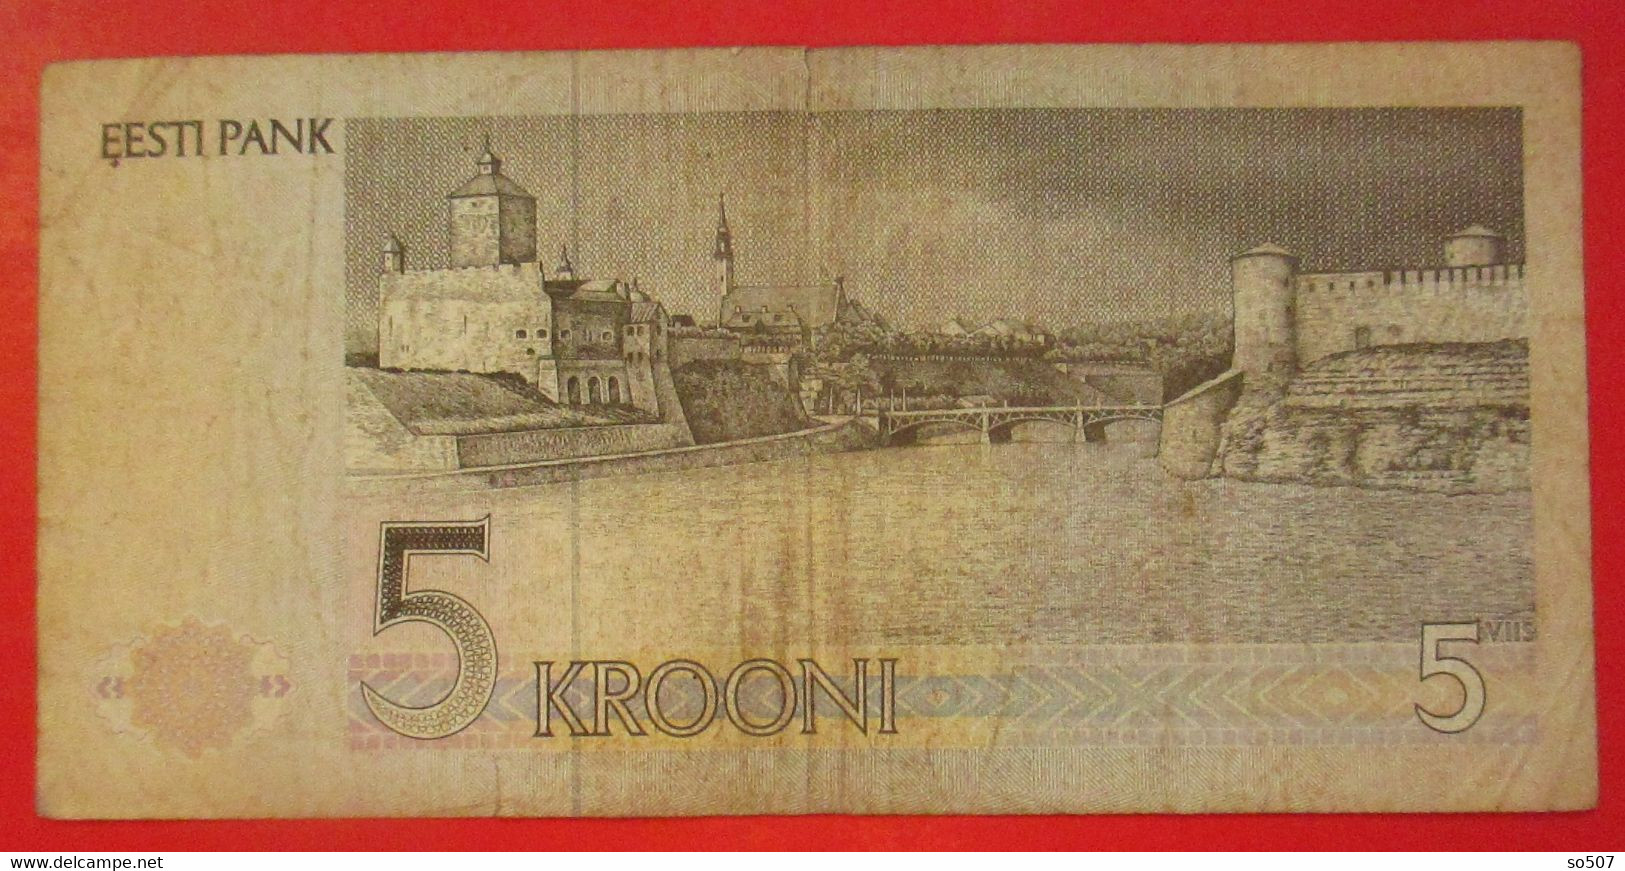 X1- 5 Krooni 1991. Estonia- Five Krooni, Chess Player Paul Keres Grandmaster, Circulated Banknote - Estland